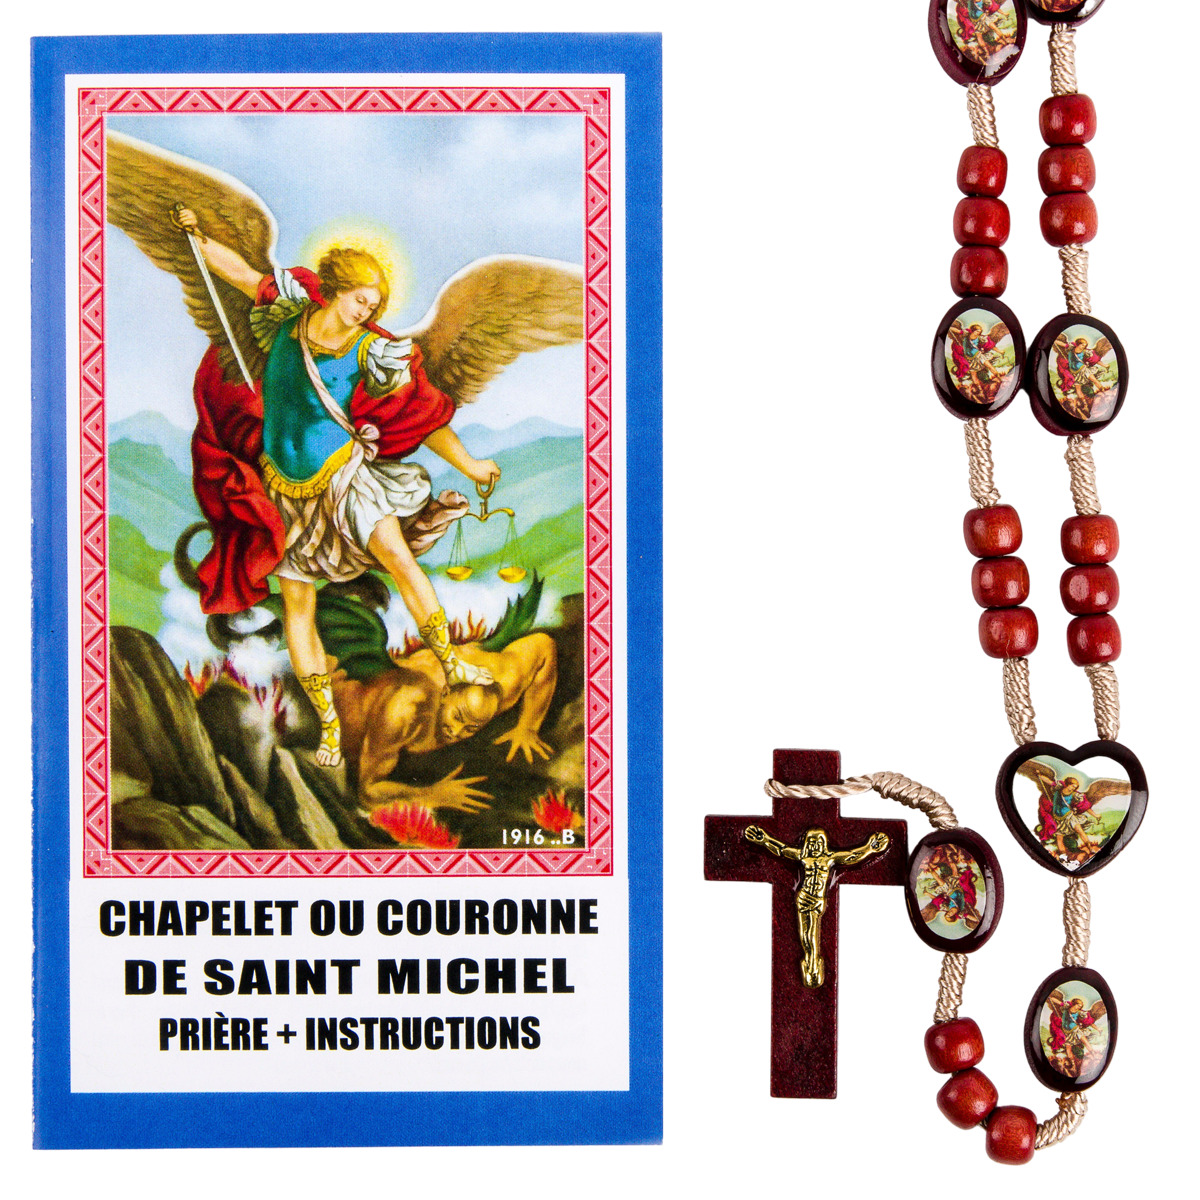 Chapelet ou couronne de Saint Michel : Chapelet + prière + instructions 